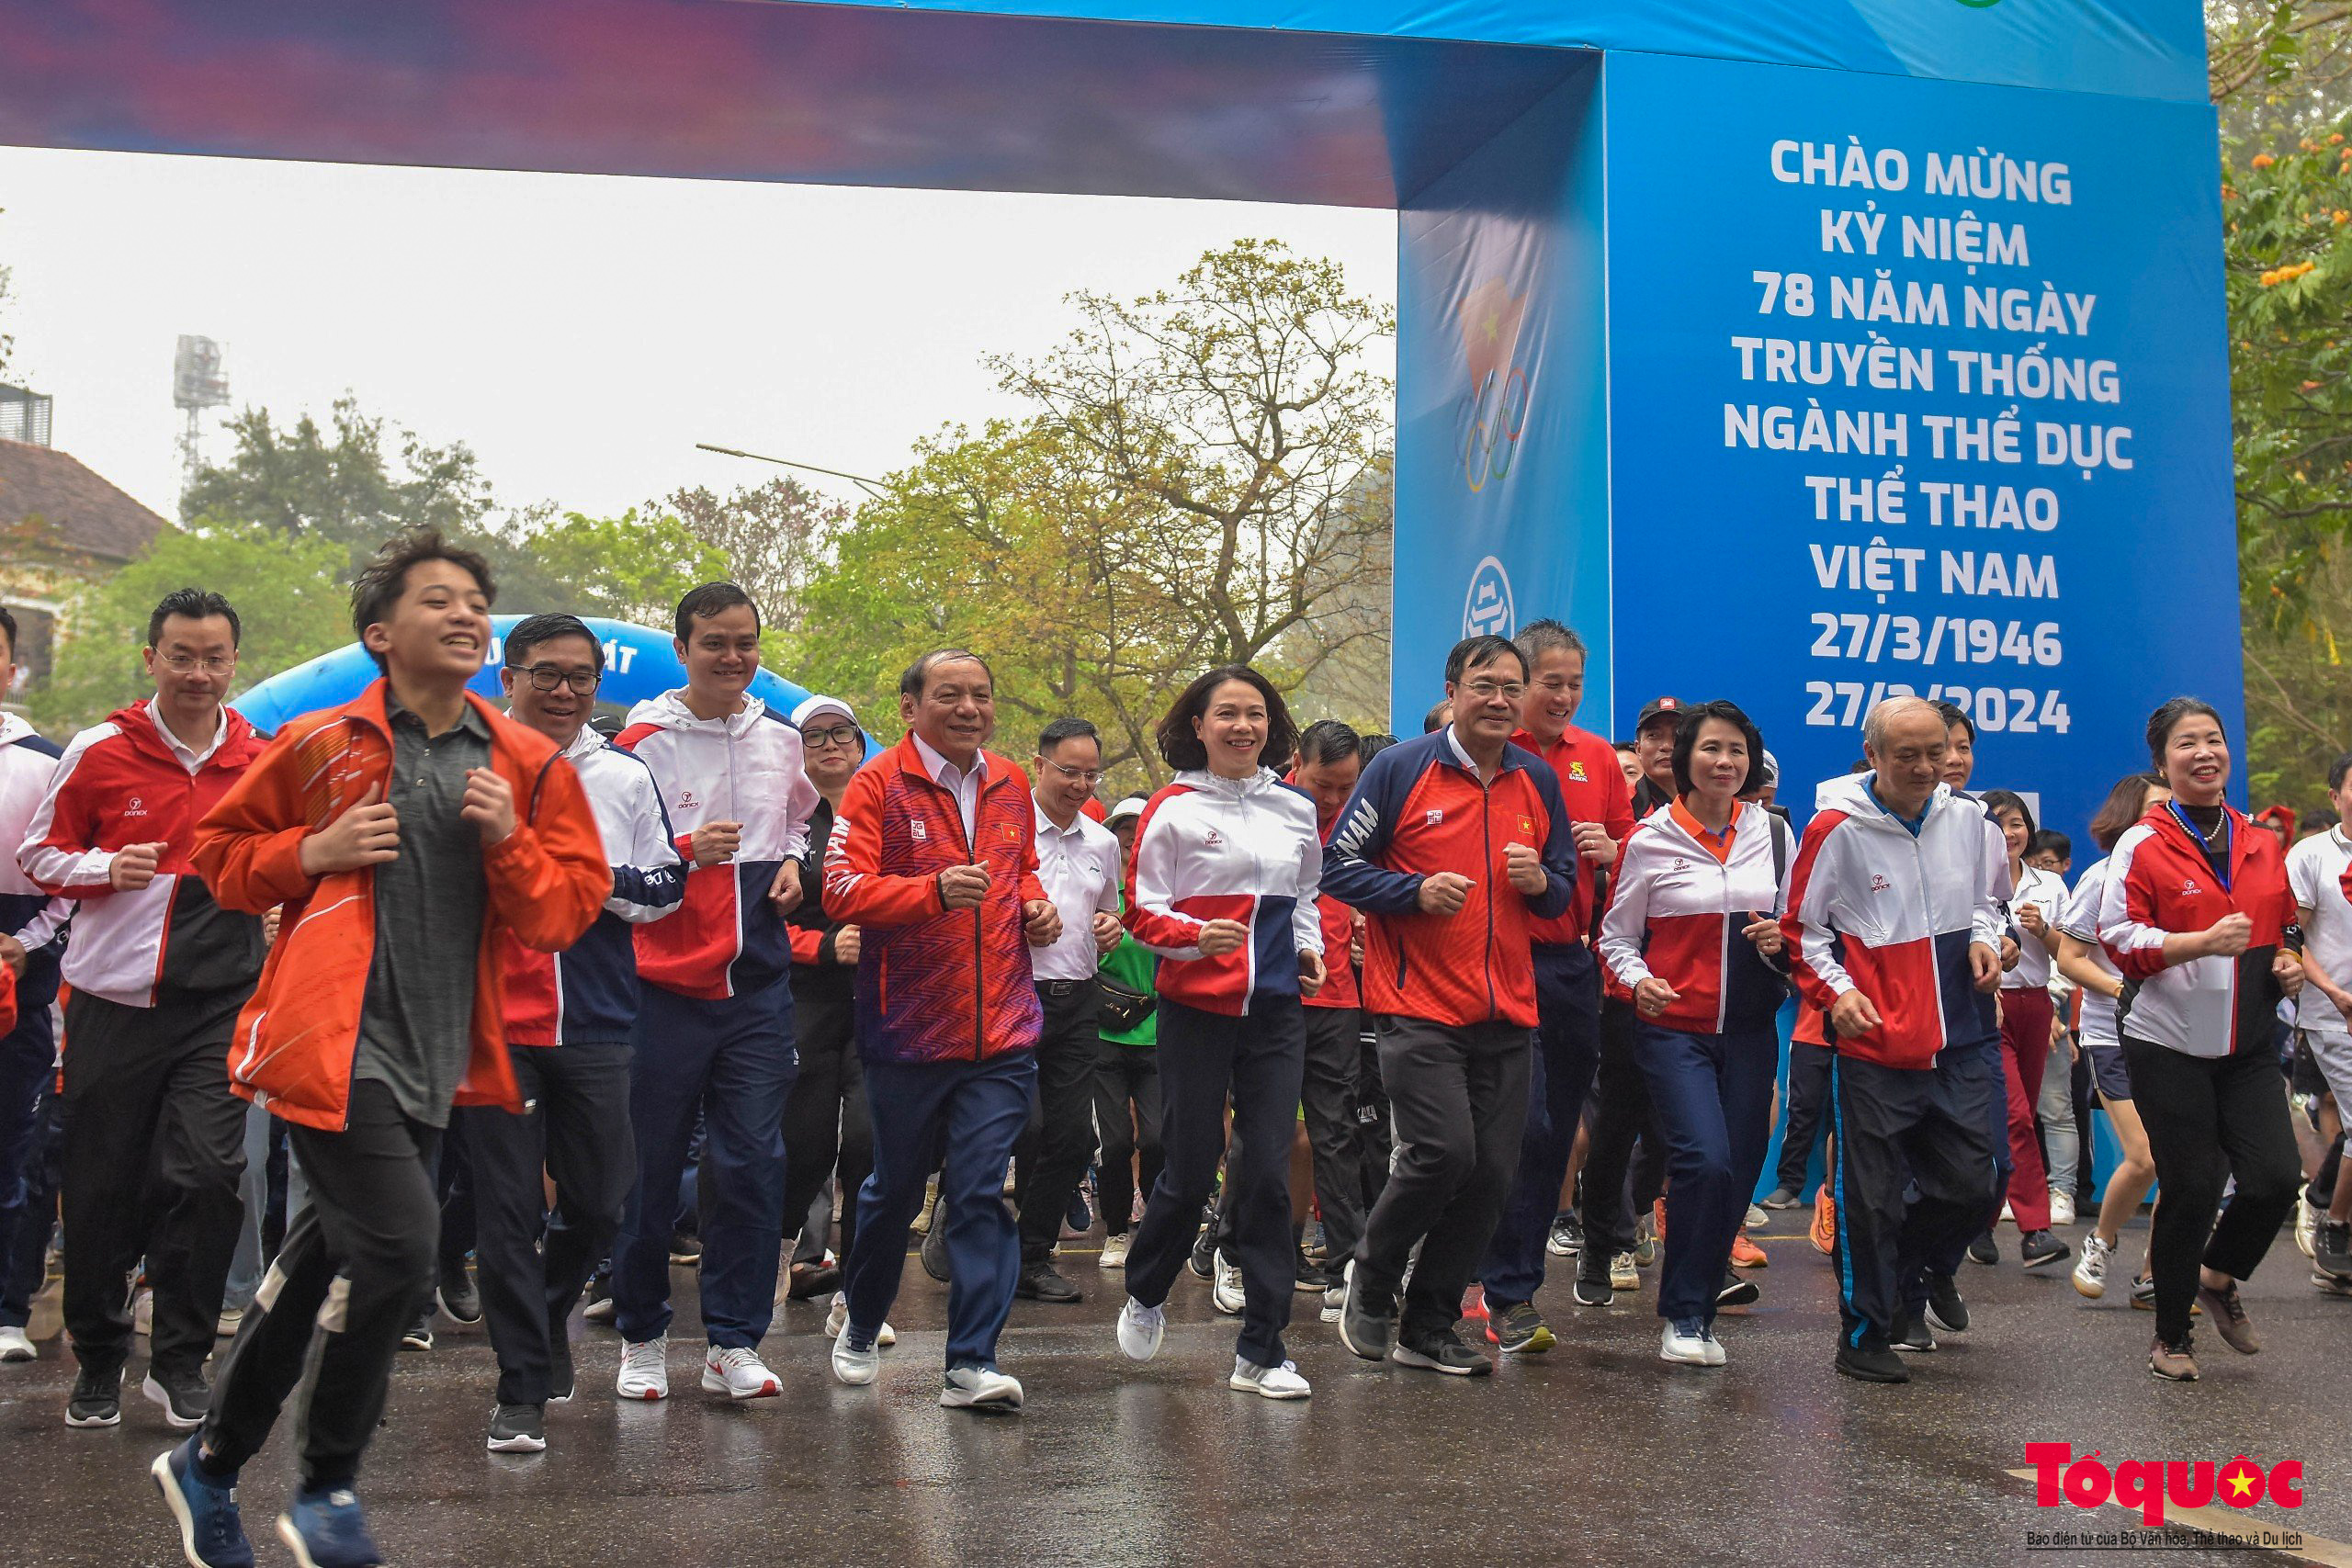 Chùm ảnh: Sôi động chương trình “Vinh quang Thể thao Việt Nam”, phát động Giải chạy Báo Hànộimới mở rộng - Ảnh 12.